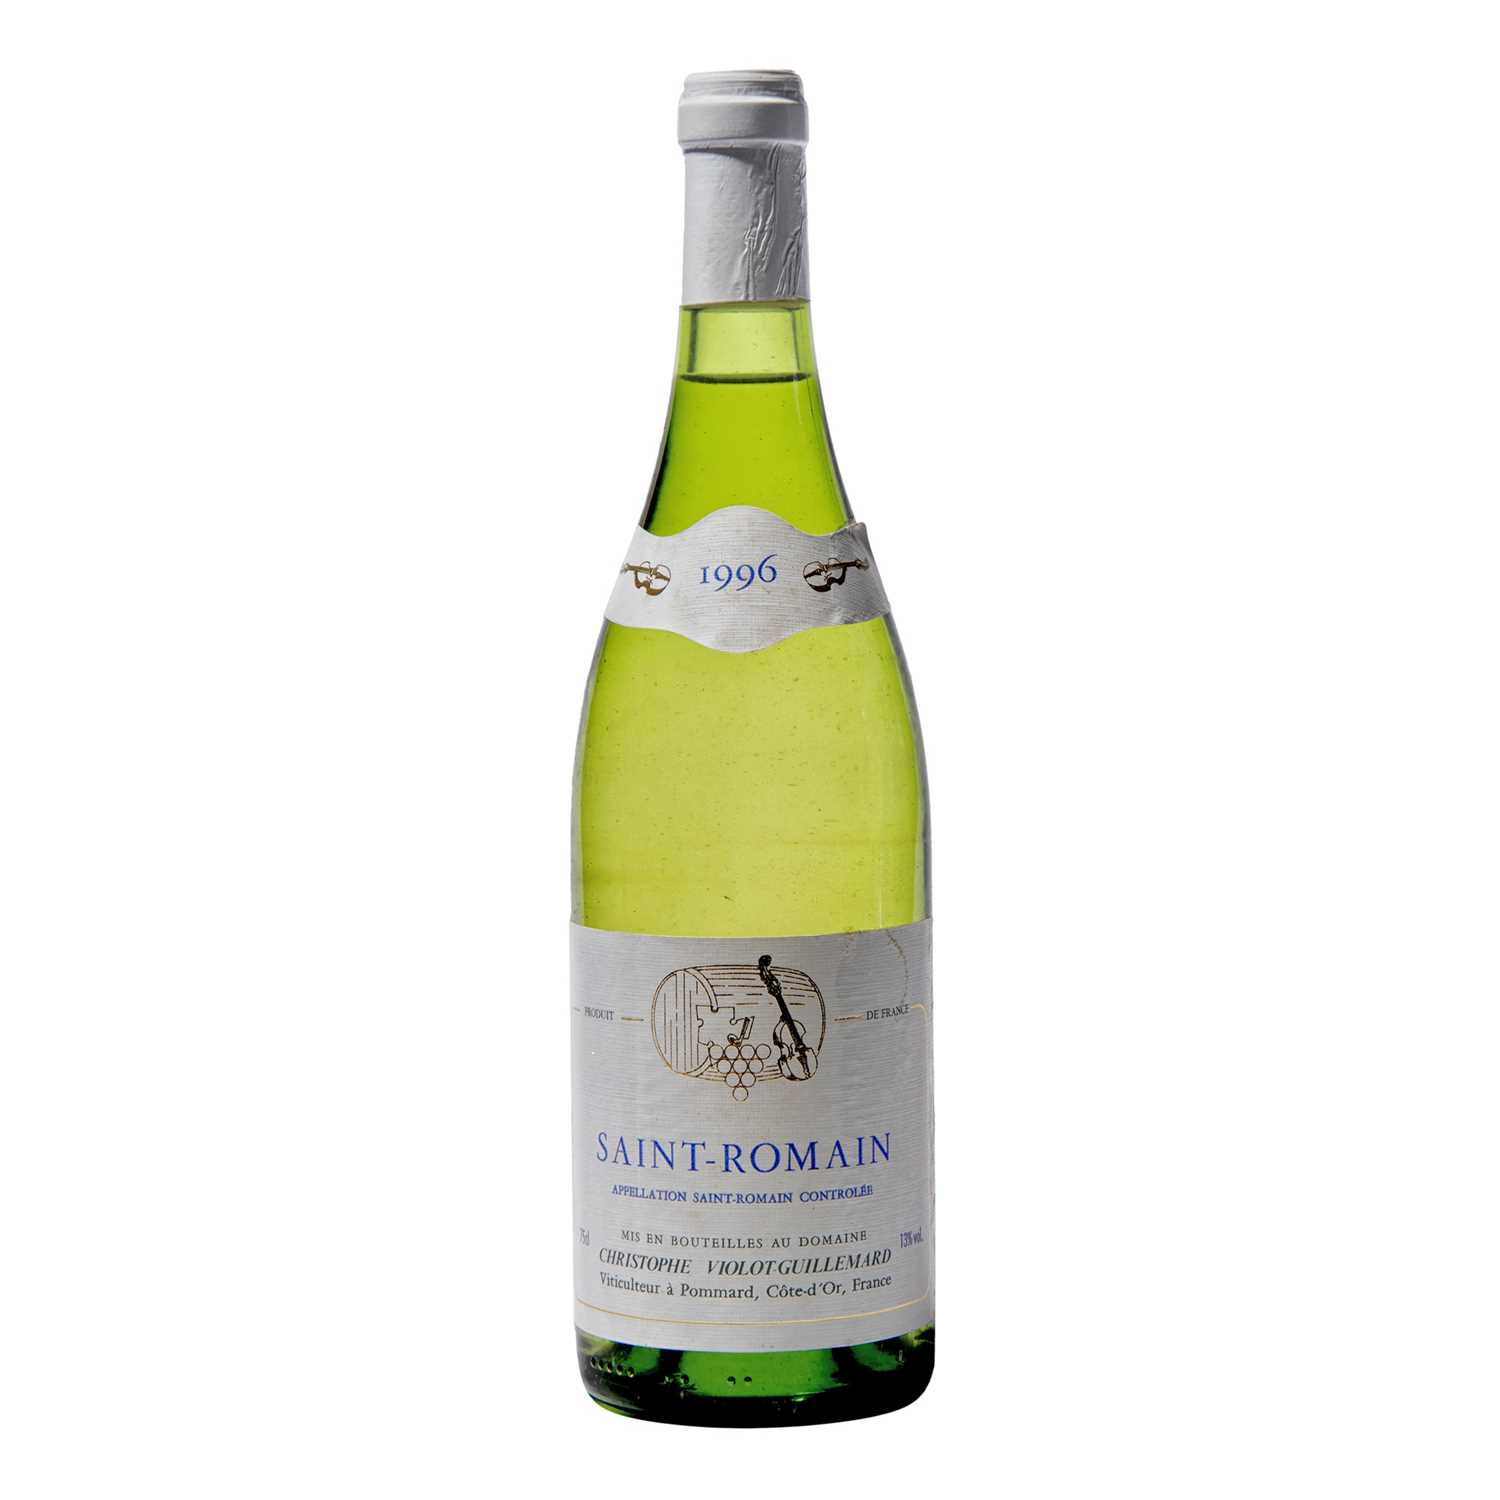 Lot 108 - 12 bottles 1996 St Romain Violot-Guillemard